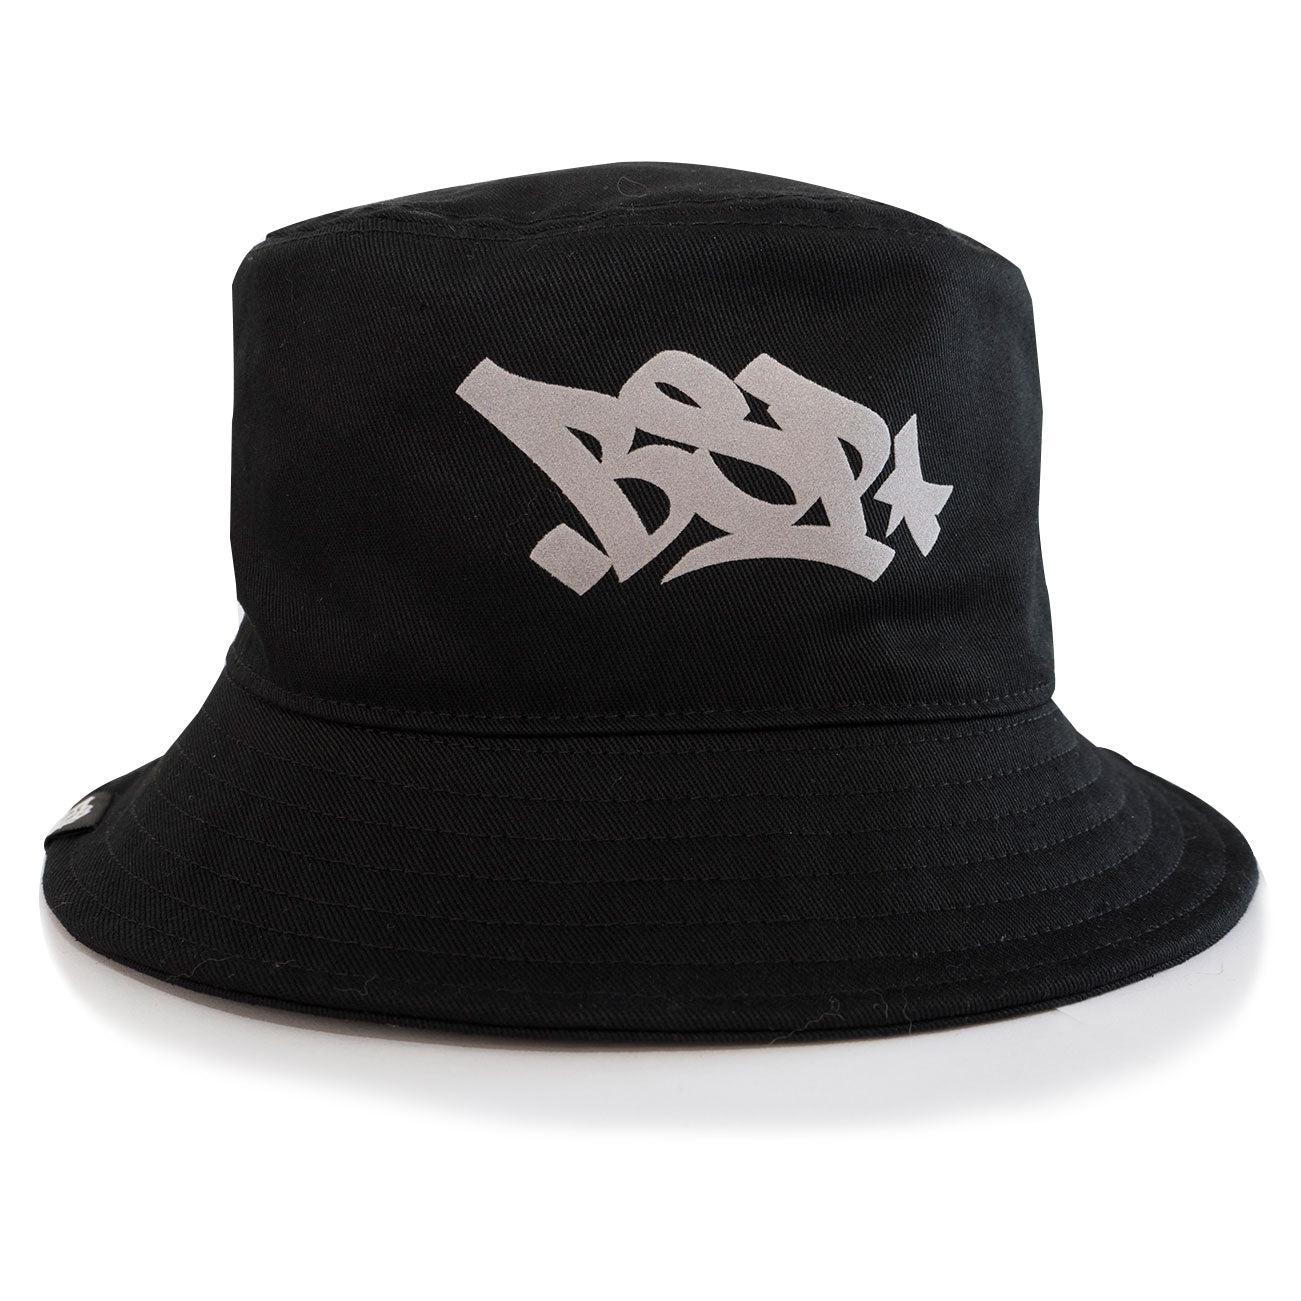 BSP Bucket Hat - Black